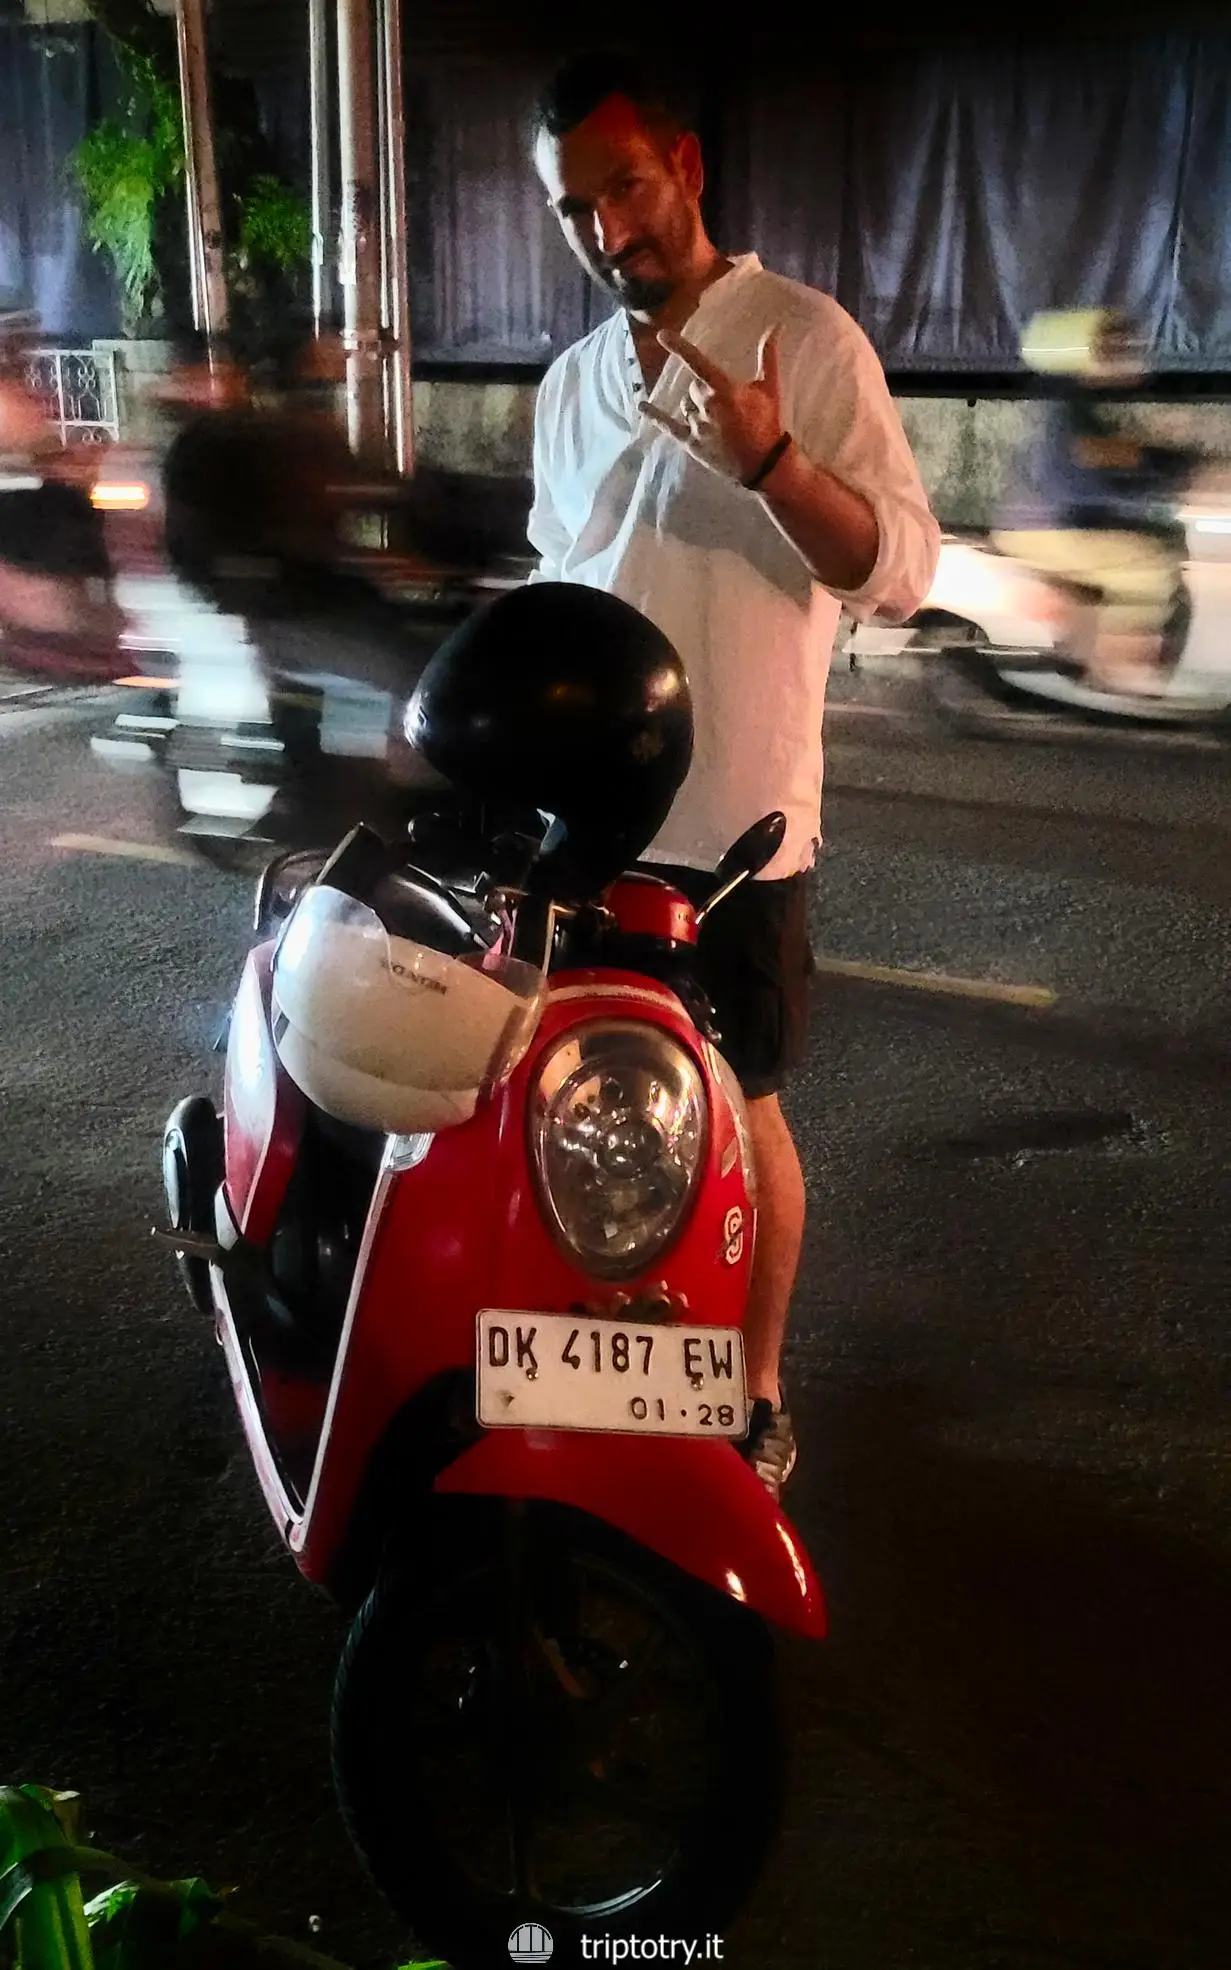 Viaggio in Indonesia fai da te - Noleggio scooter per muoversi alla sera a Ubud nell'isola di Bali in Indonesia